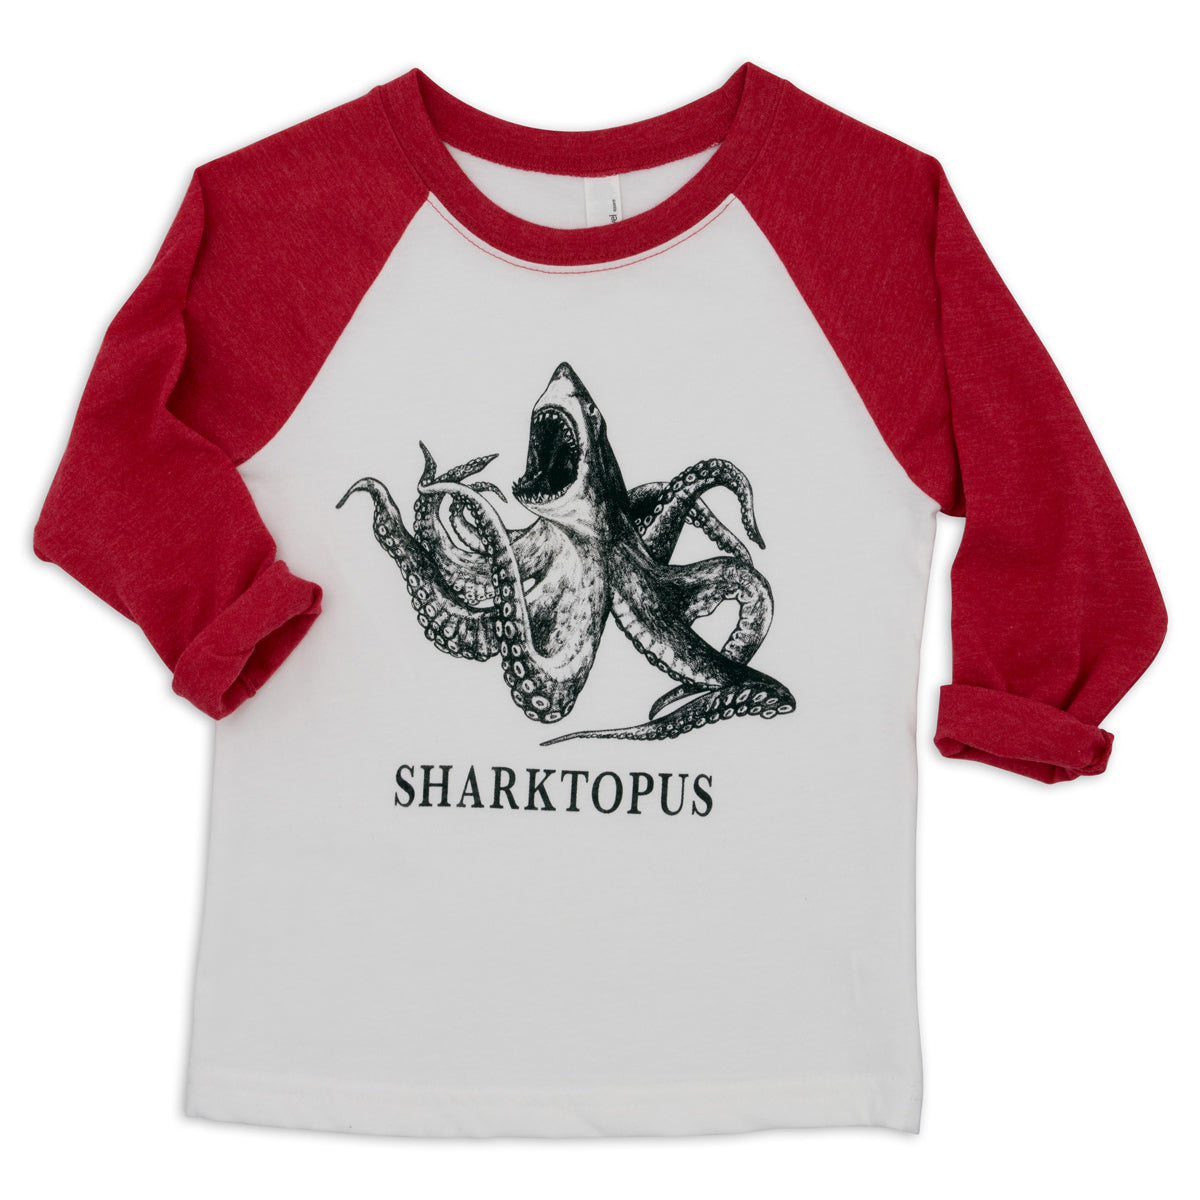 Sharktopus | Shark + Octopus Hybrid Animal | Kids T-Shirt | Red & White